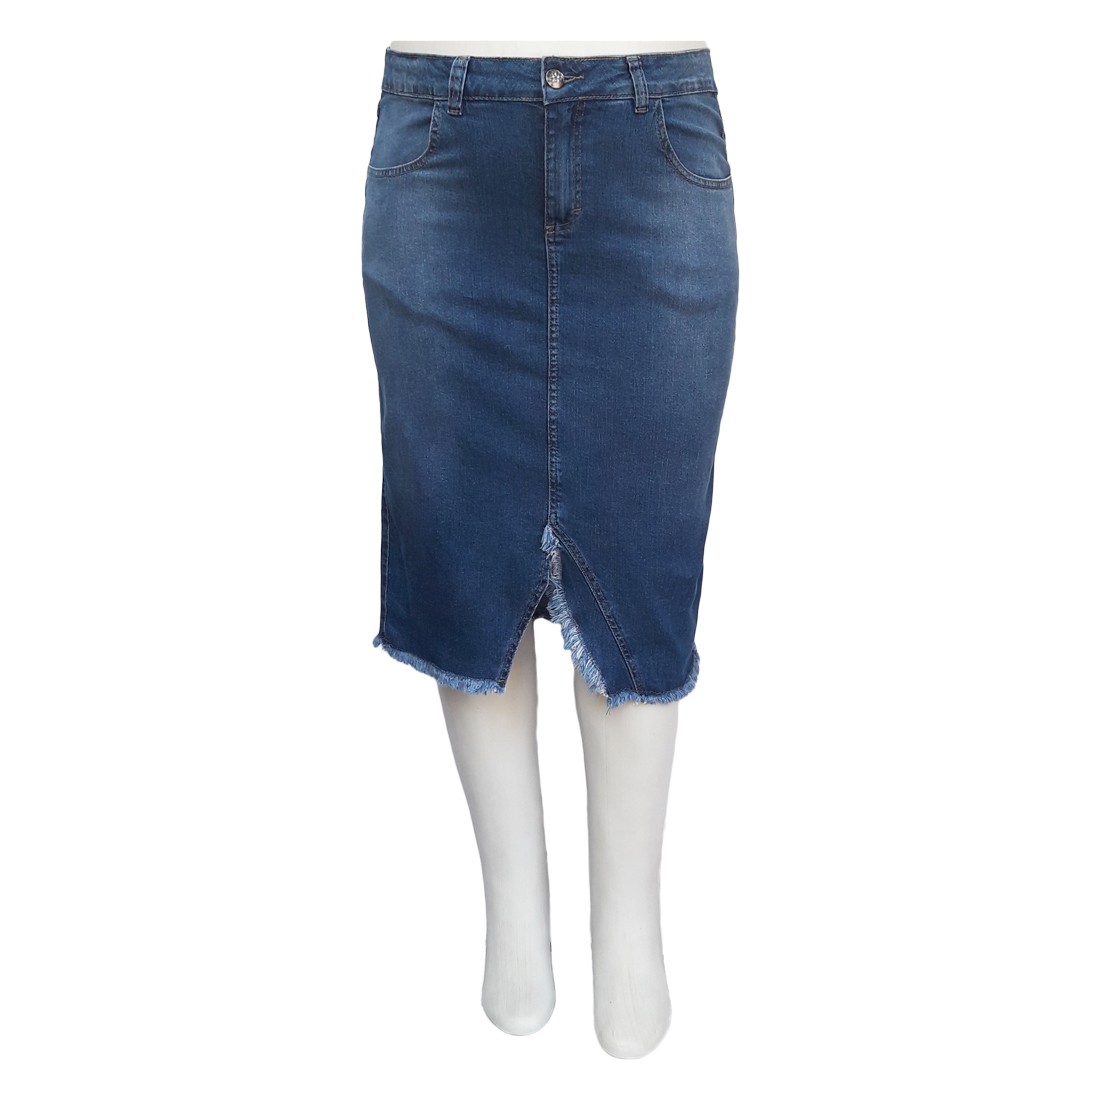 Saia Jeans Plus Size Barra Desfiada Ref 01 Moda Evangélica